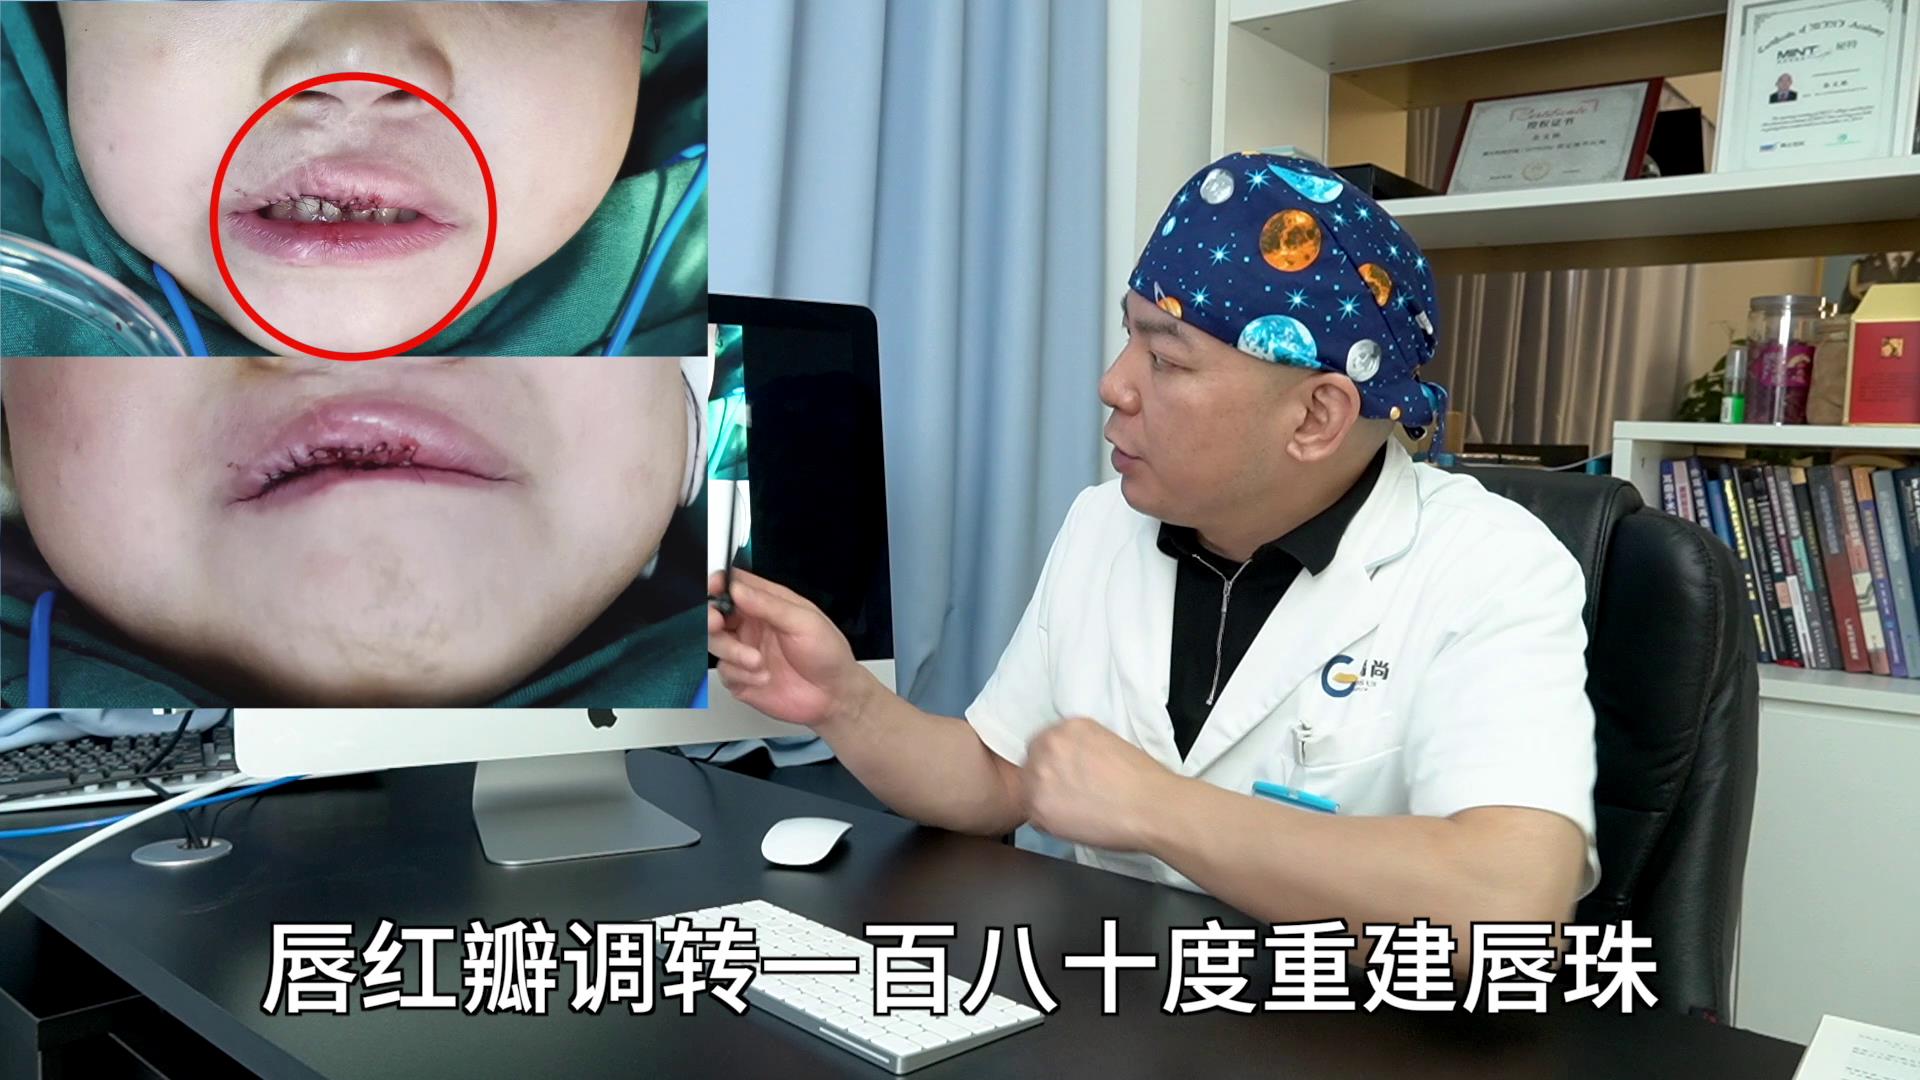 【医学3D】兔唇 唇裂修复-医视屏-3D-医视屏-3D-哔哩哔哩视频